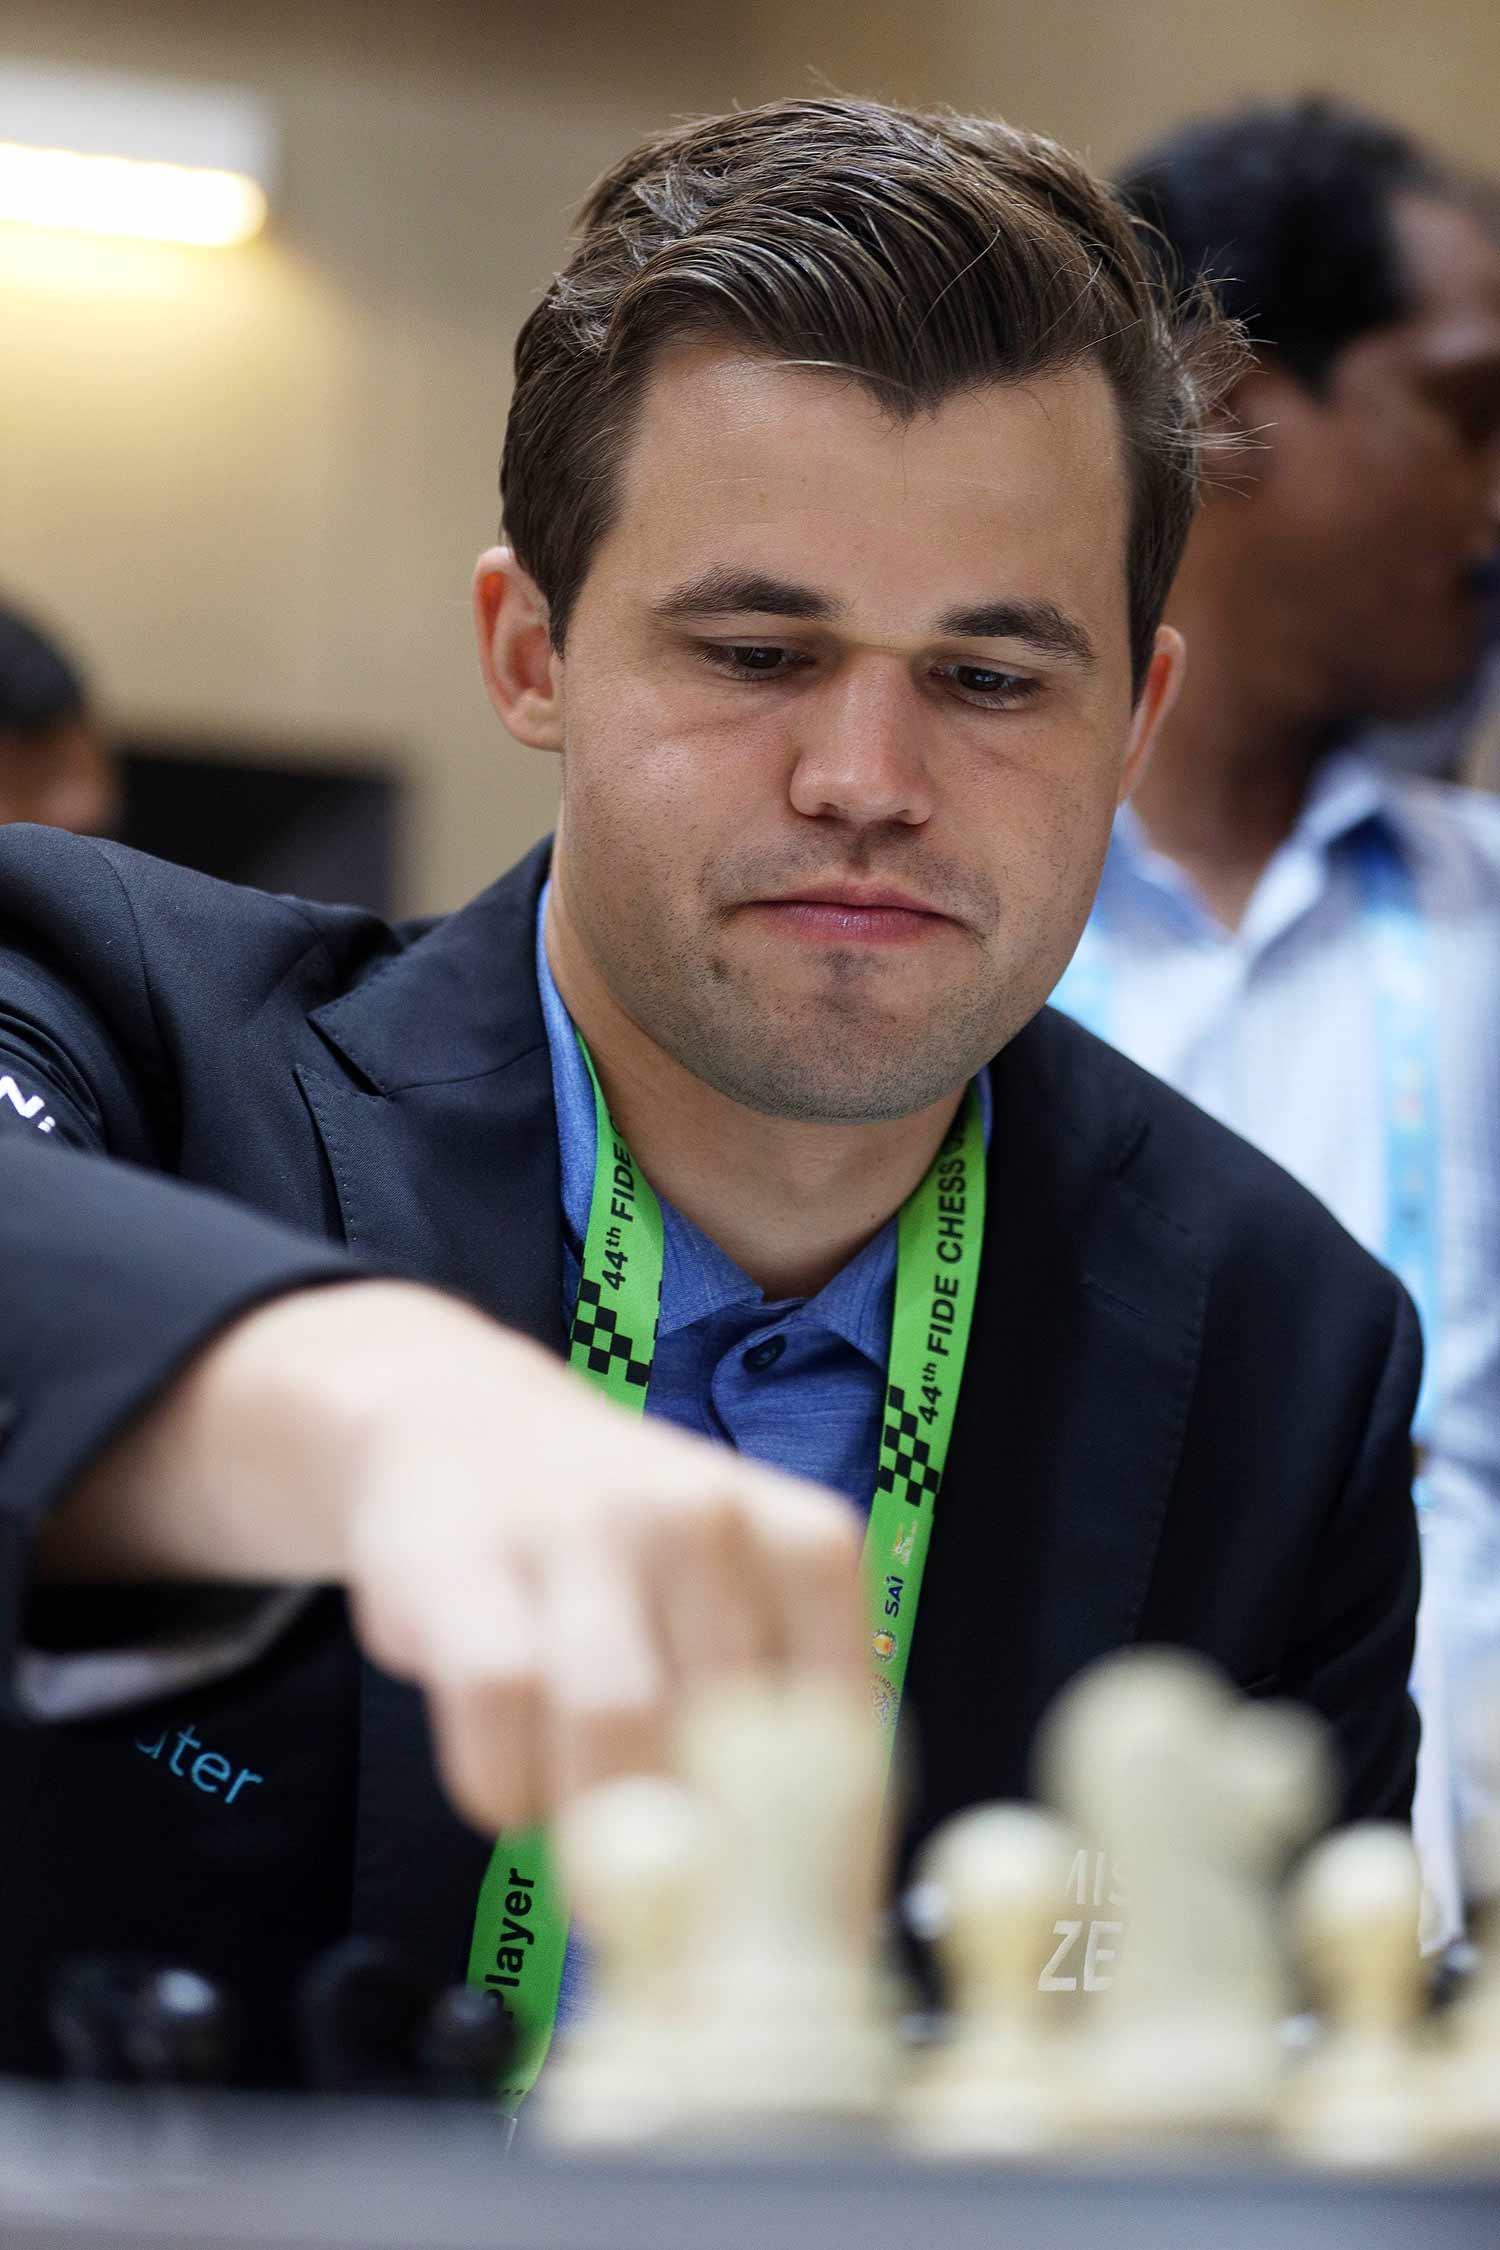 El ajedrecista ruso Esipenko se une a la carta abierta contra la invasión  de Ucrania